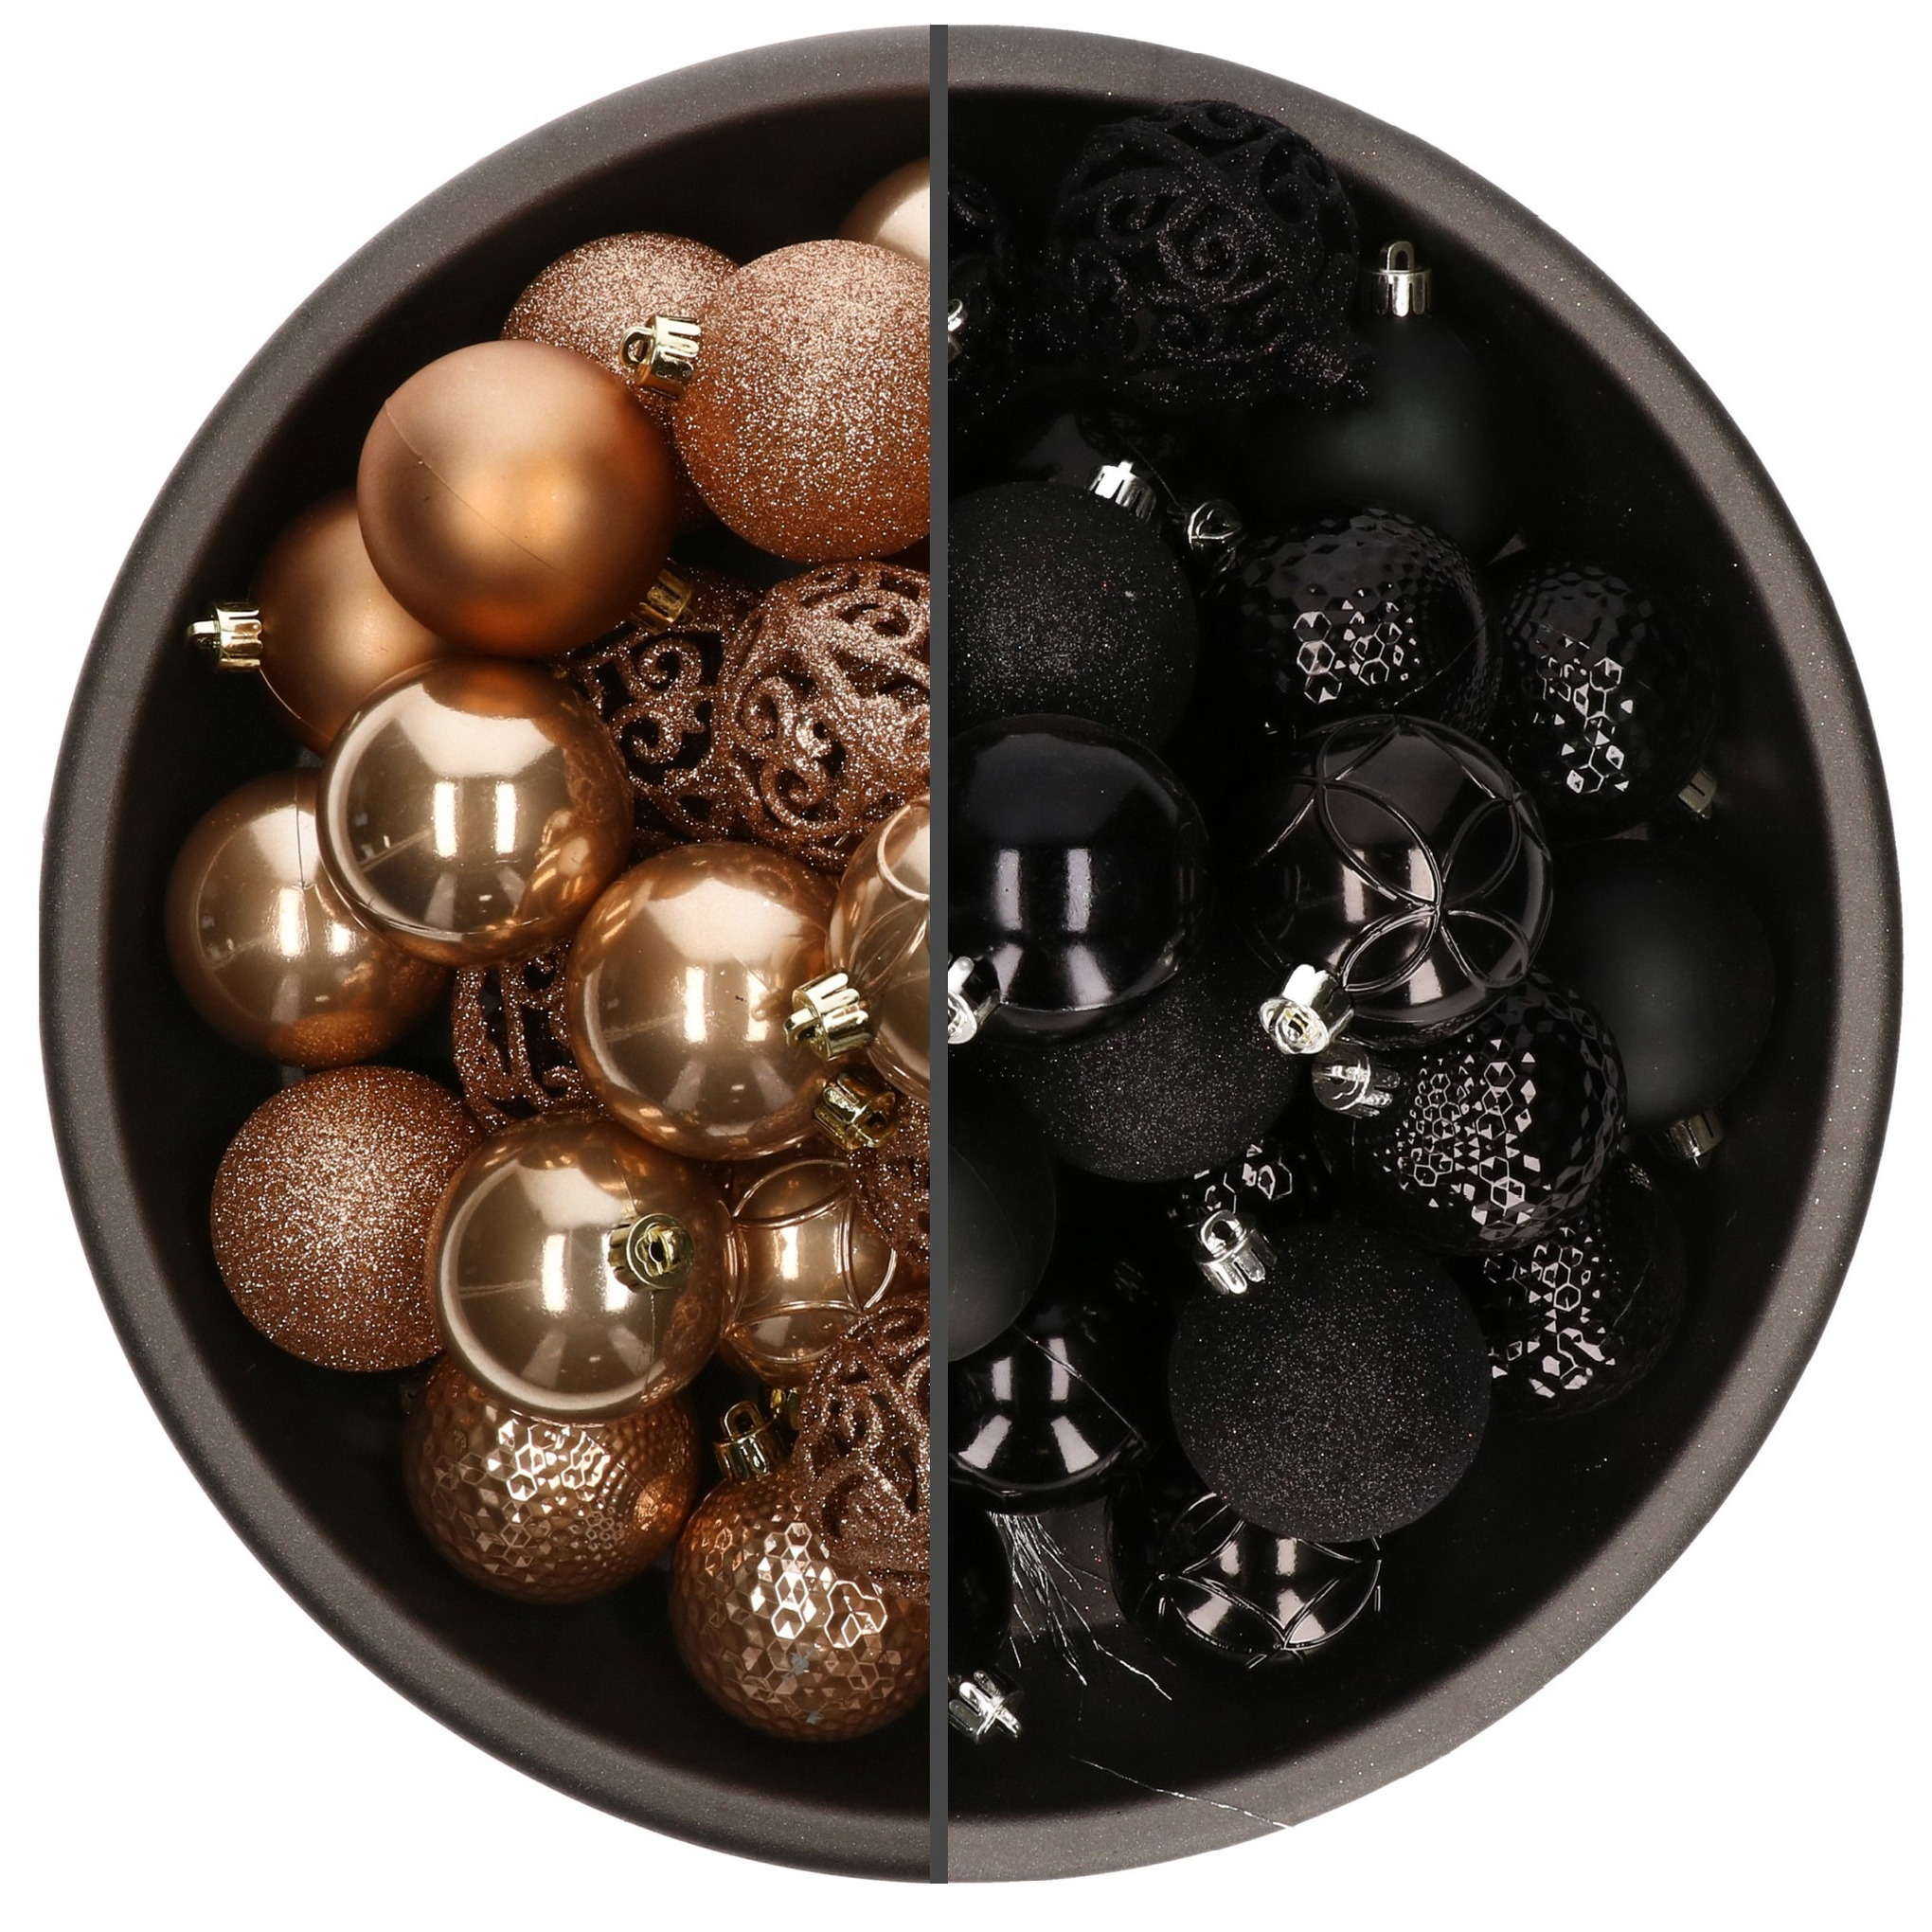 74x stuks kunststof kerstballen mix zwart en camel bruin 6 cm